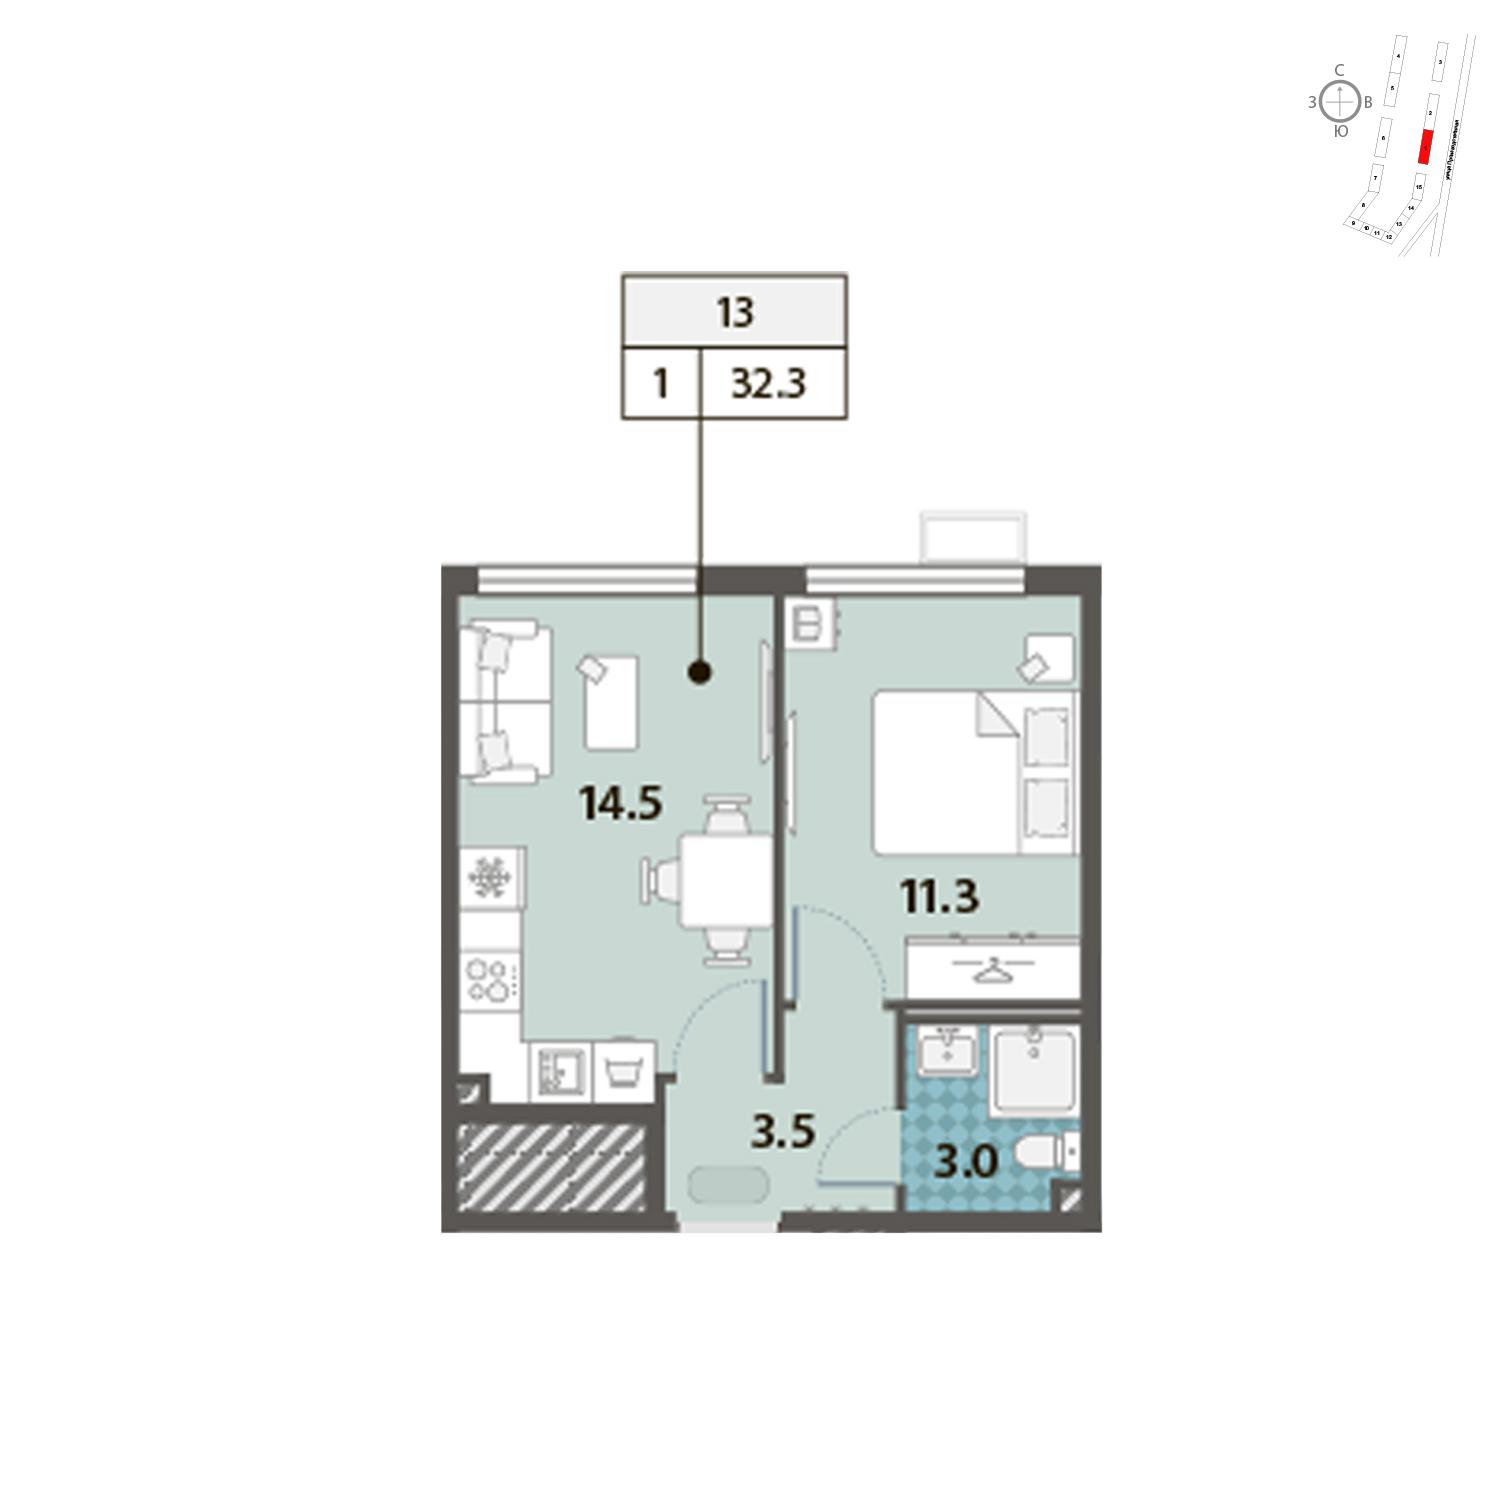 Продаётся 1-комнатная квартира в новостройке 32.3 кв.м. этаж 2/24 за 9 604 566 руб 